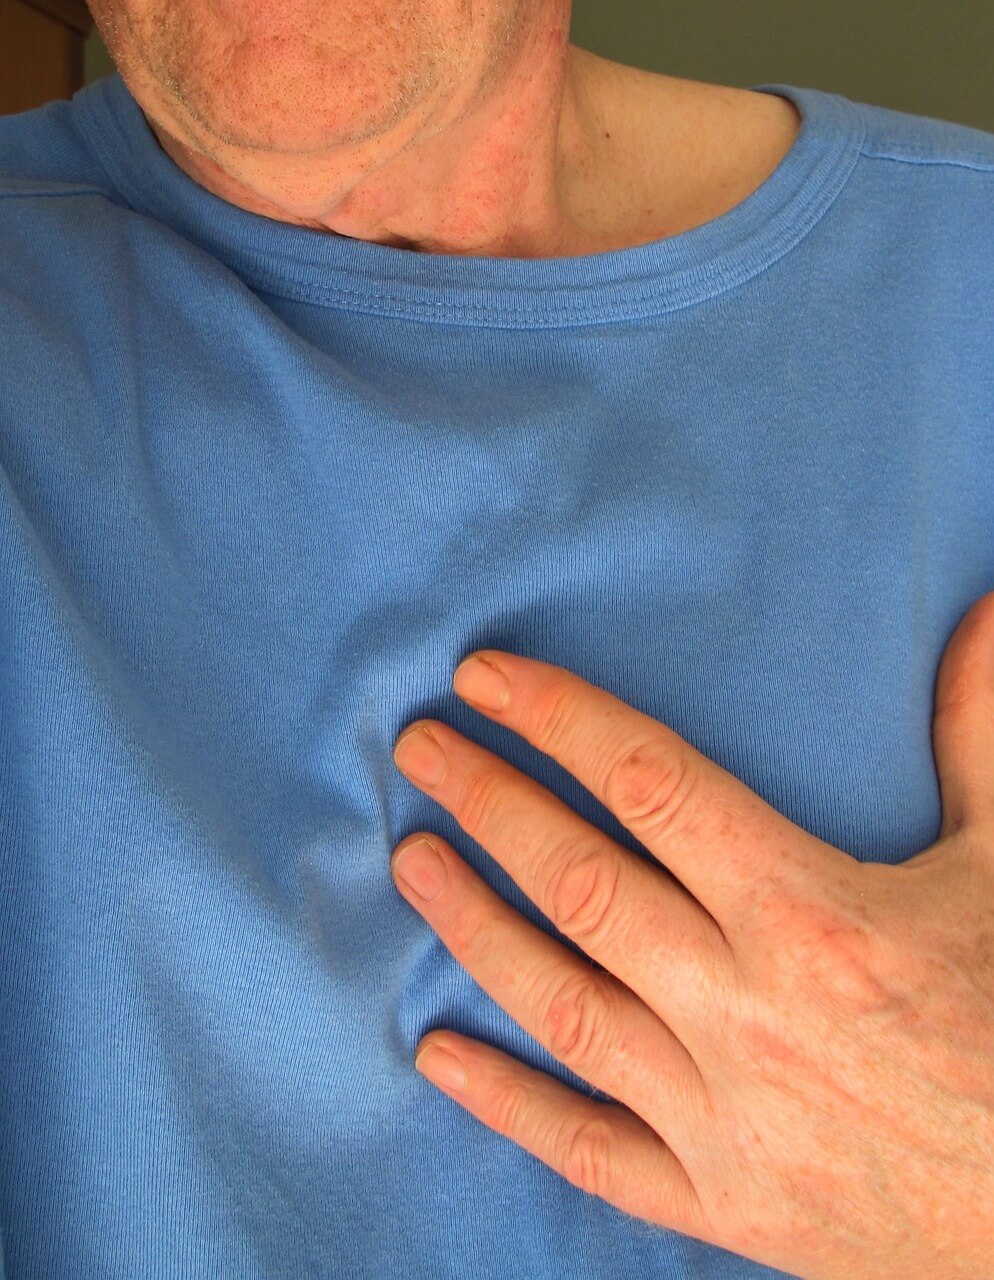 body-upper-body-hand, Heart Disease